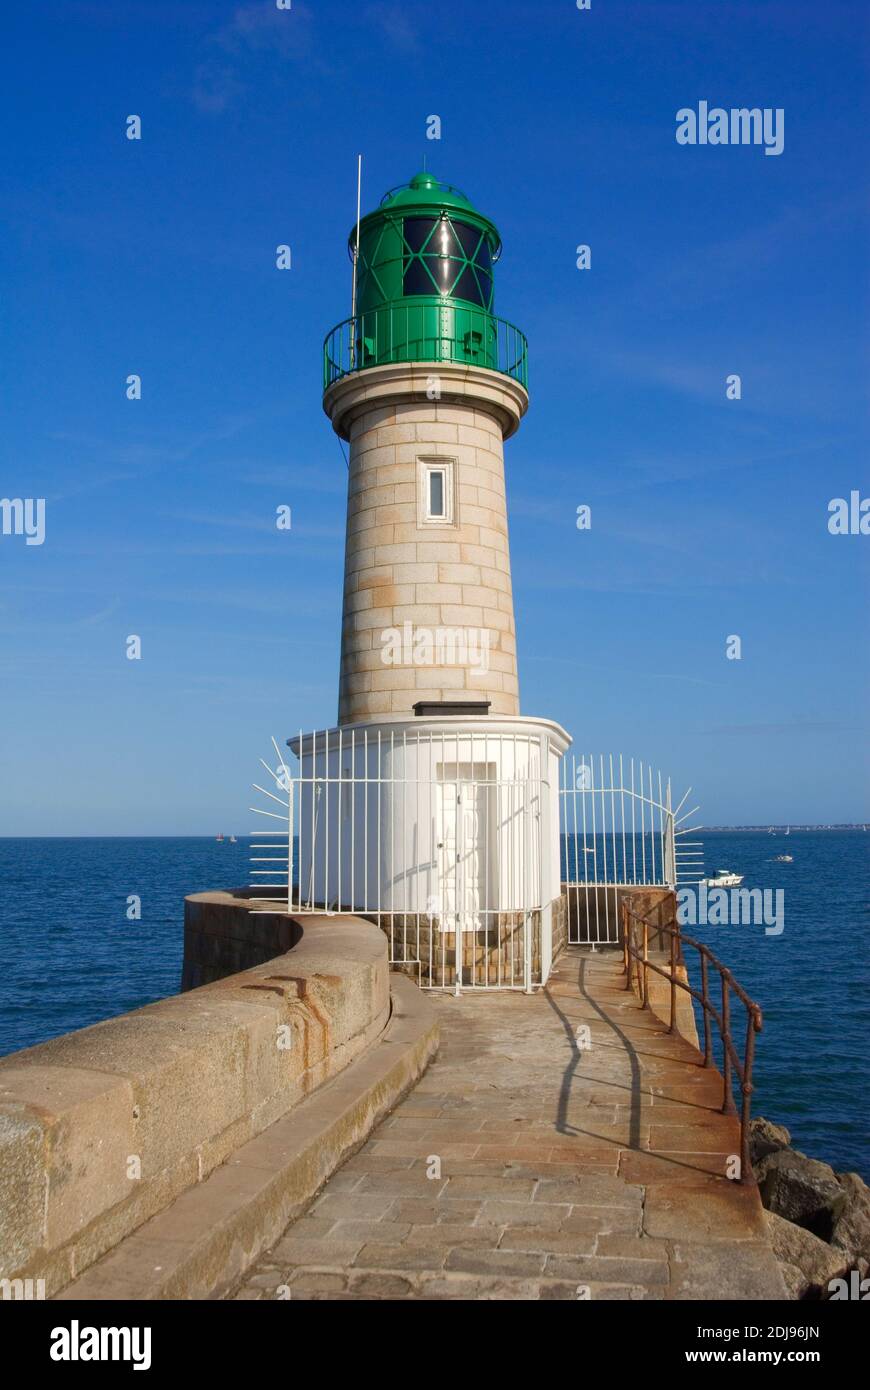 Frankreich, Bretagne, Pays de la Loire, Loire Atlantique, Halbinsel Guerande, Le Croisic, Leuchtturm, Phare de la JetÈe de TrÈhic Stock Photo